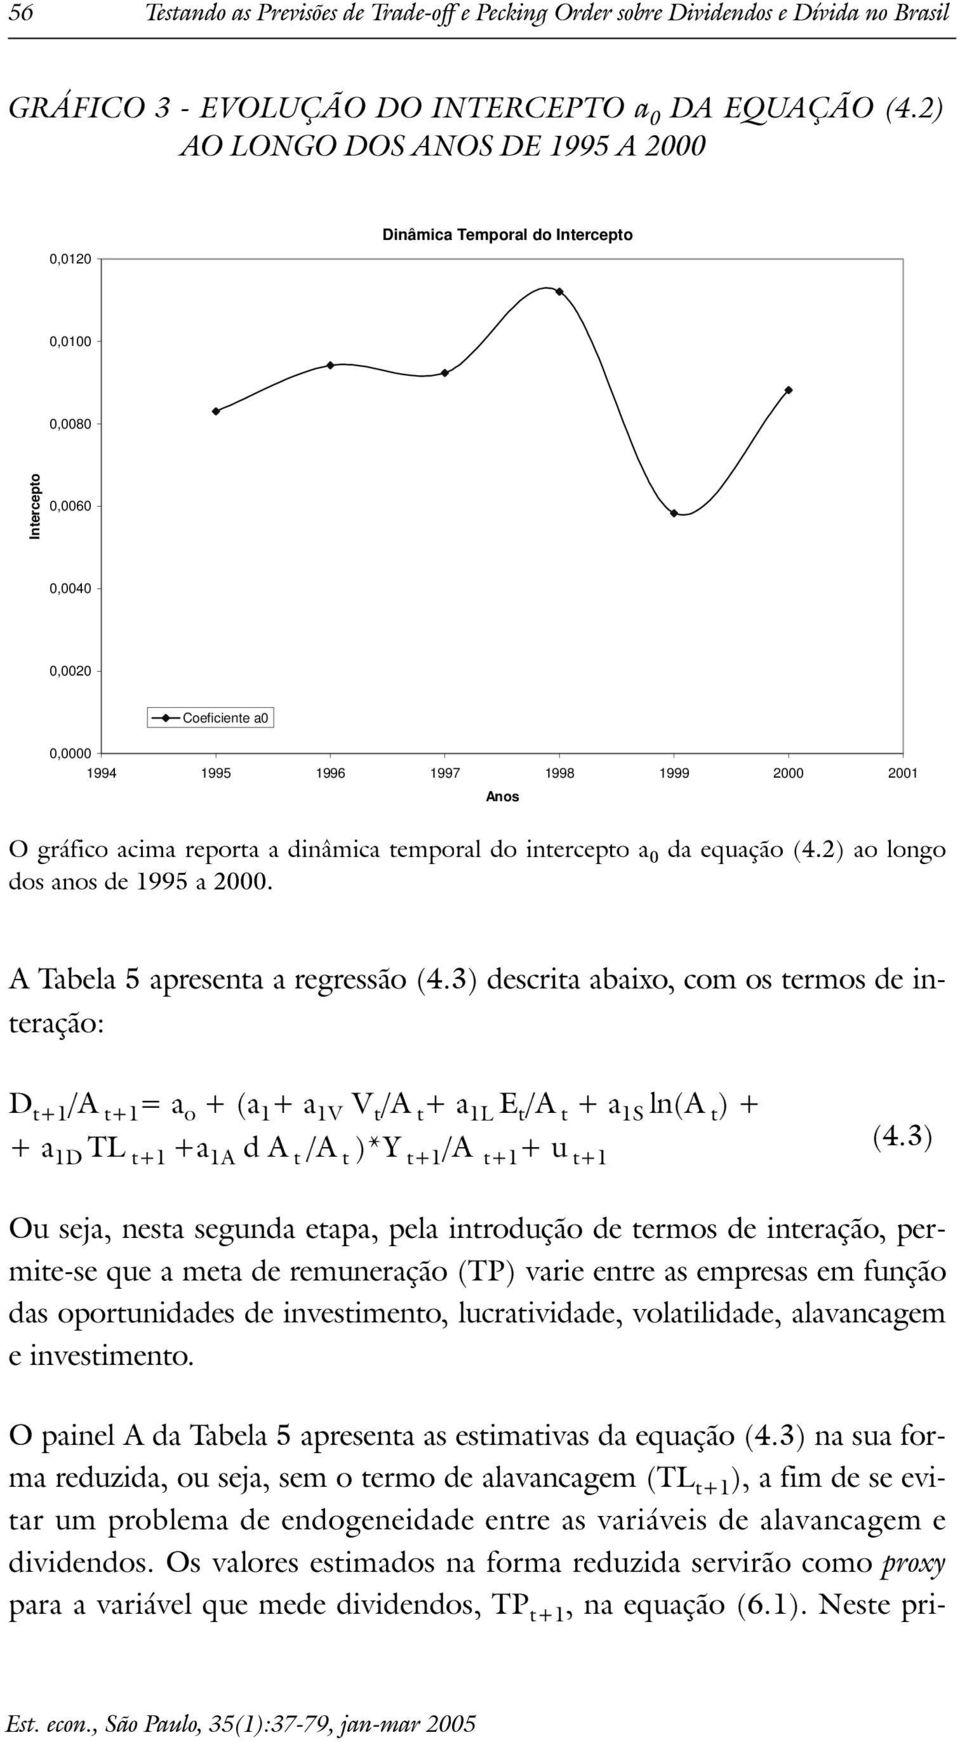 repora a dinâmica emporal do inercepo a 0 da equação (4.2) ao longo dos anos de 1995 a 2000. A Tabela 5 apresena a regressão (4.